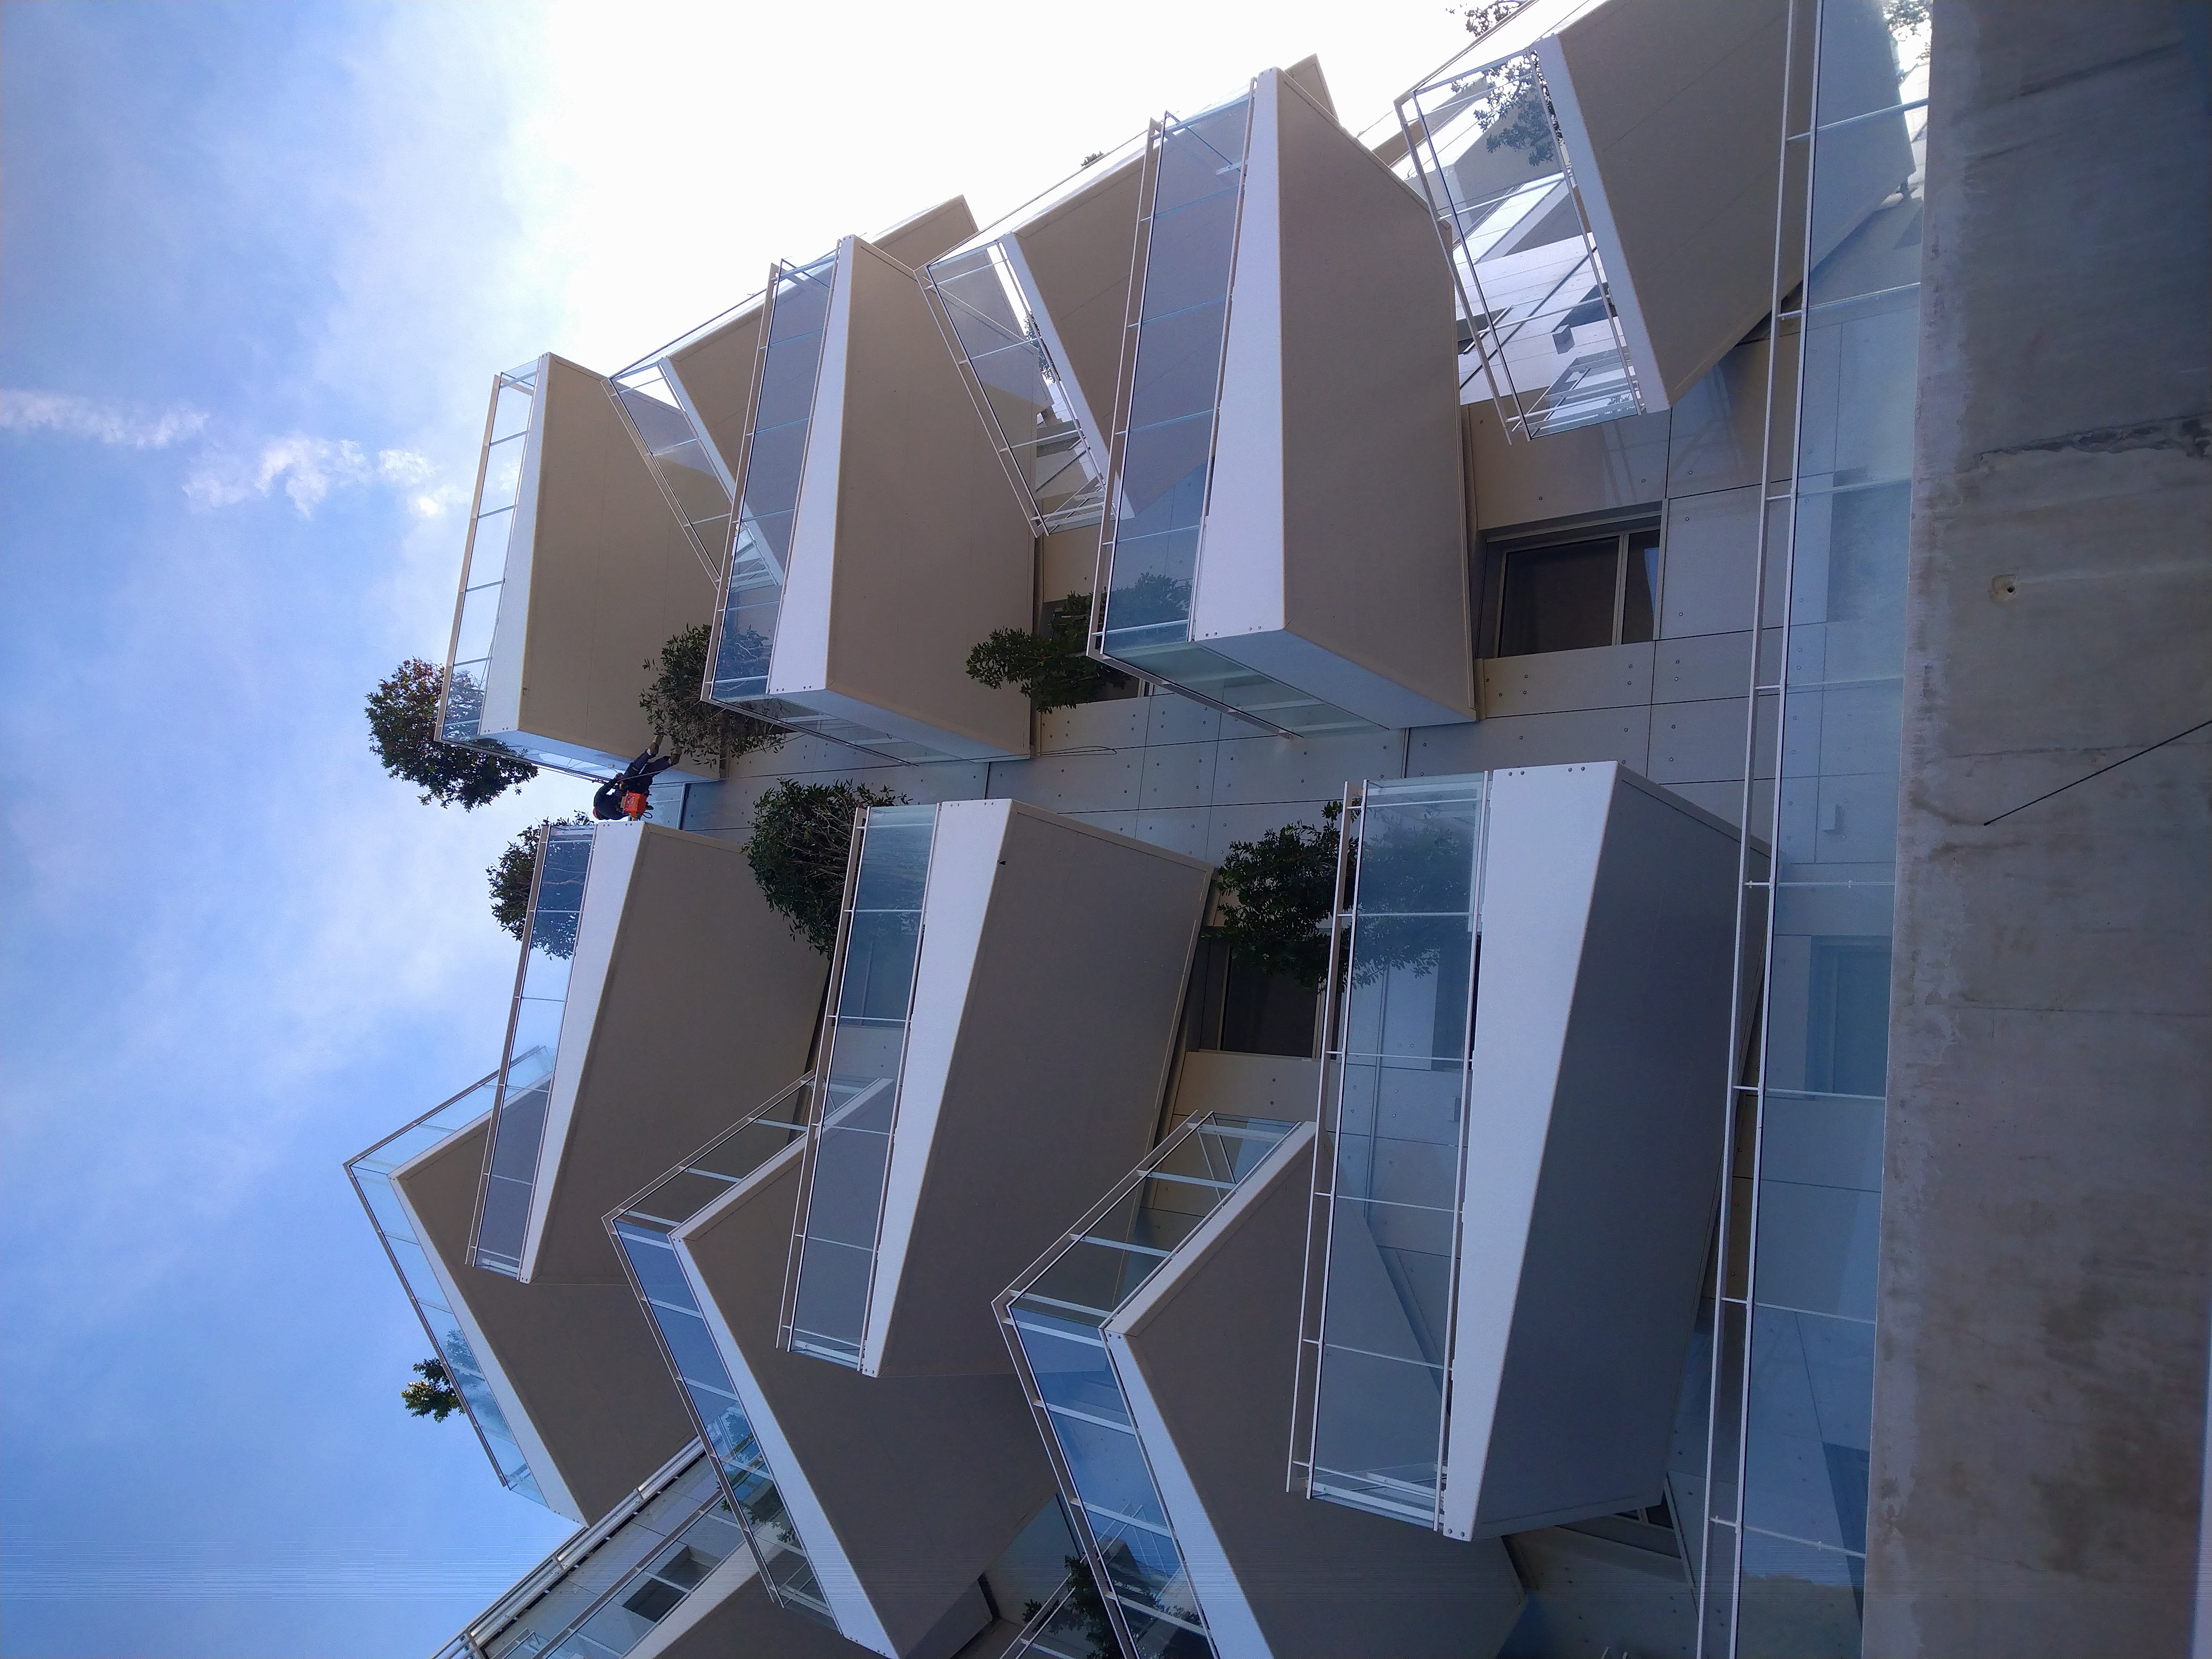 Projection de peinture sur les balcons en acier de cet immeuble. Nos cordistes du bâtiment adaptent leur technique de peinture aux différents matériaux.